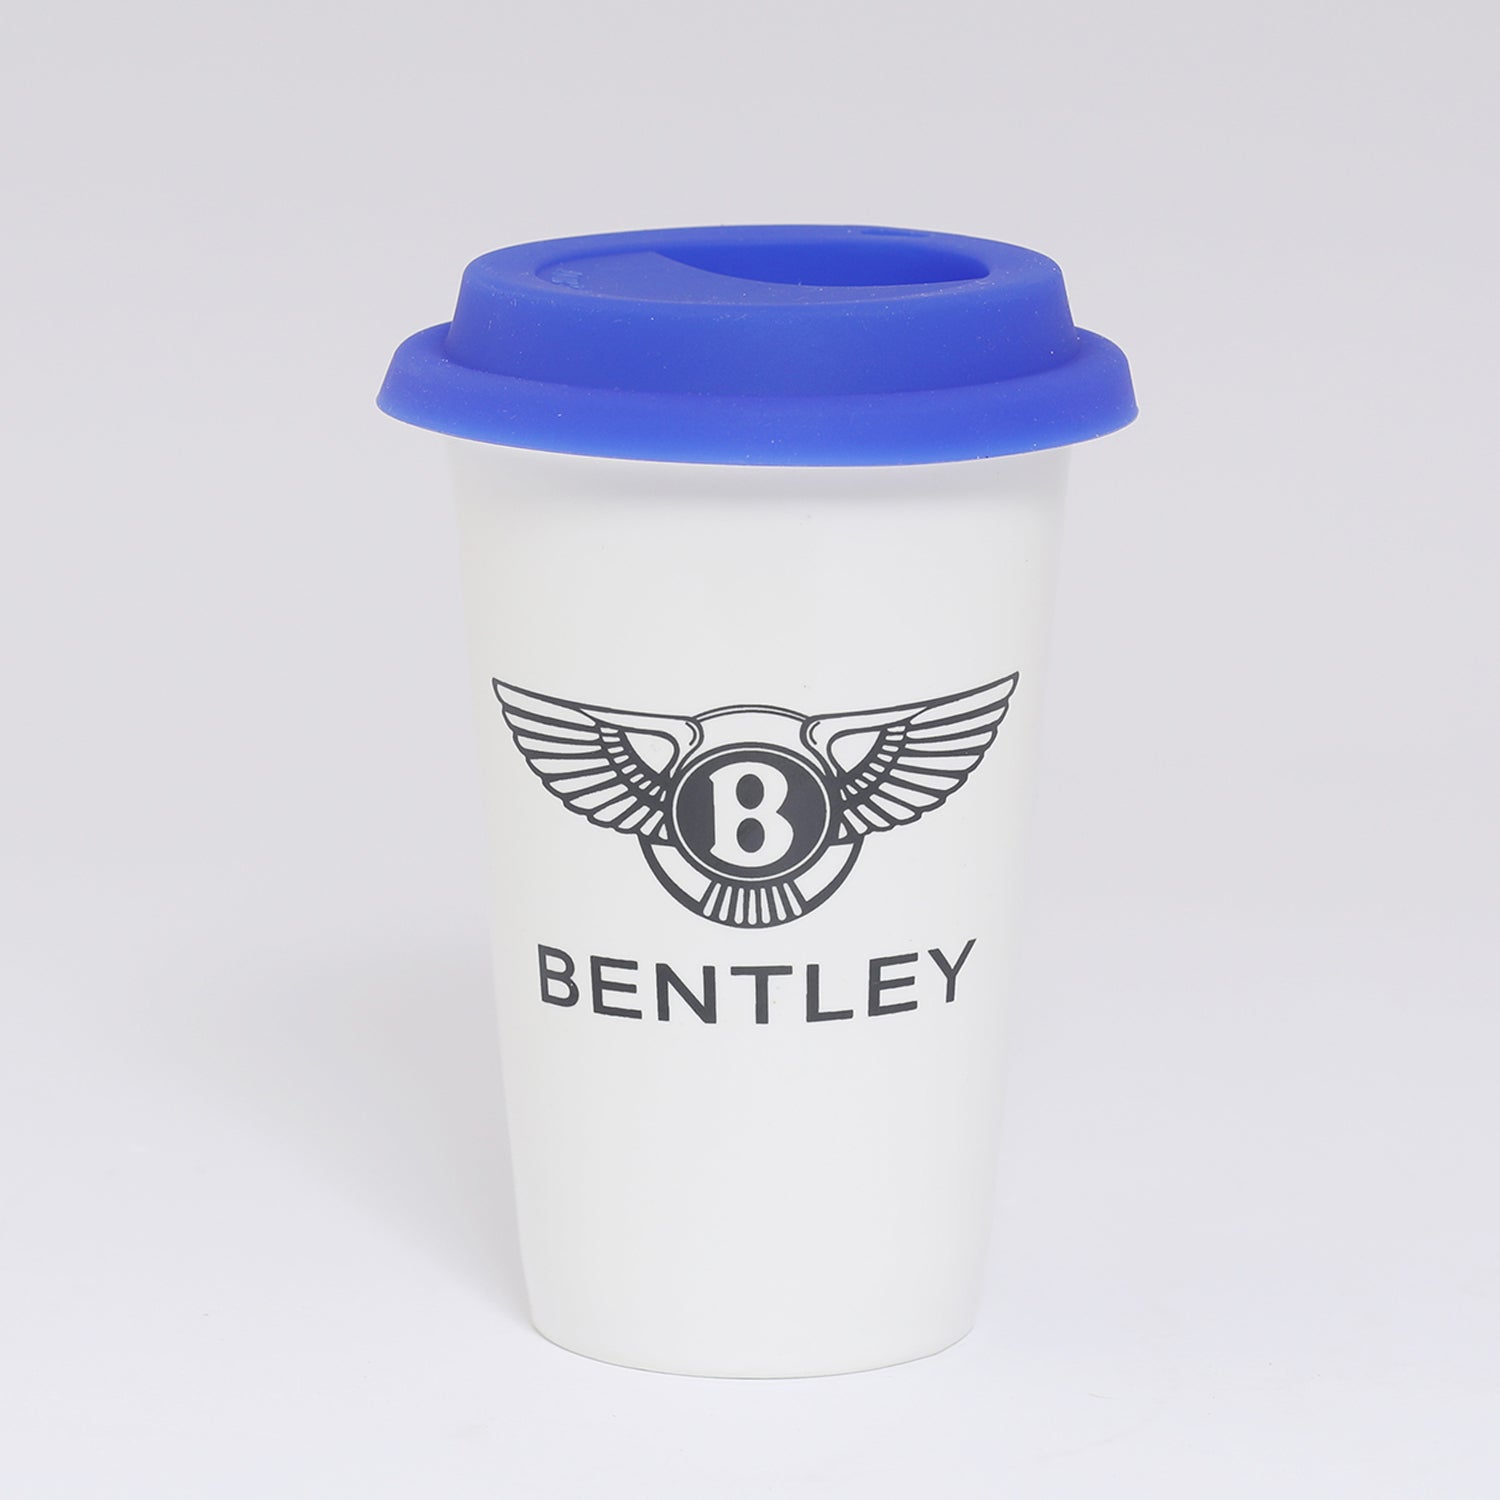 Bentley Coffee Mug With Lid